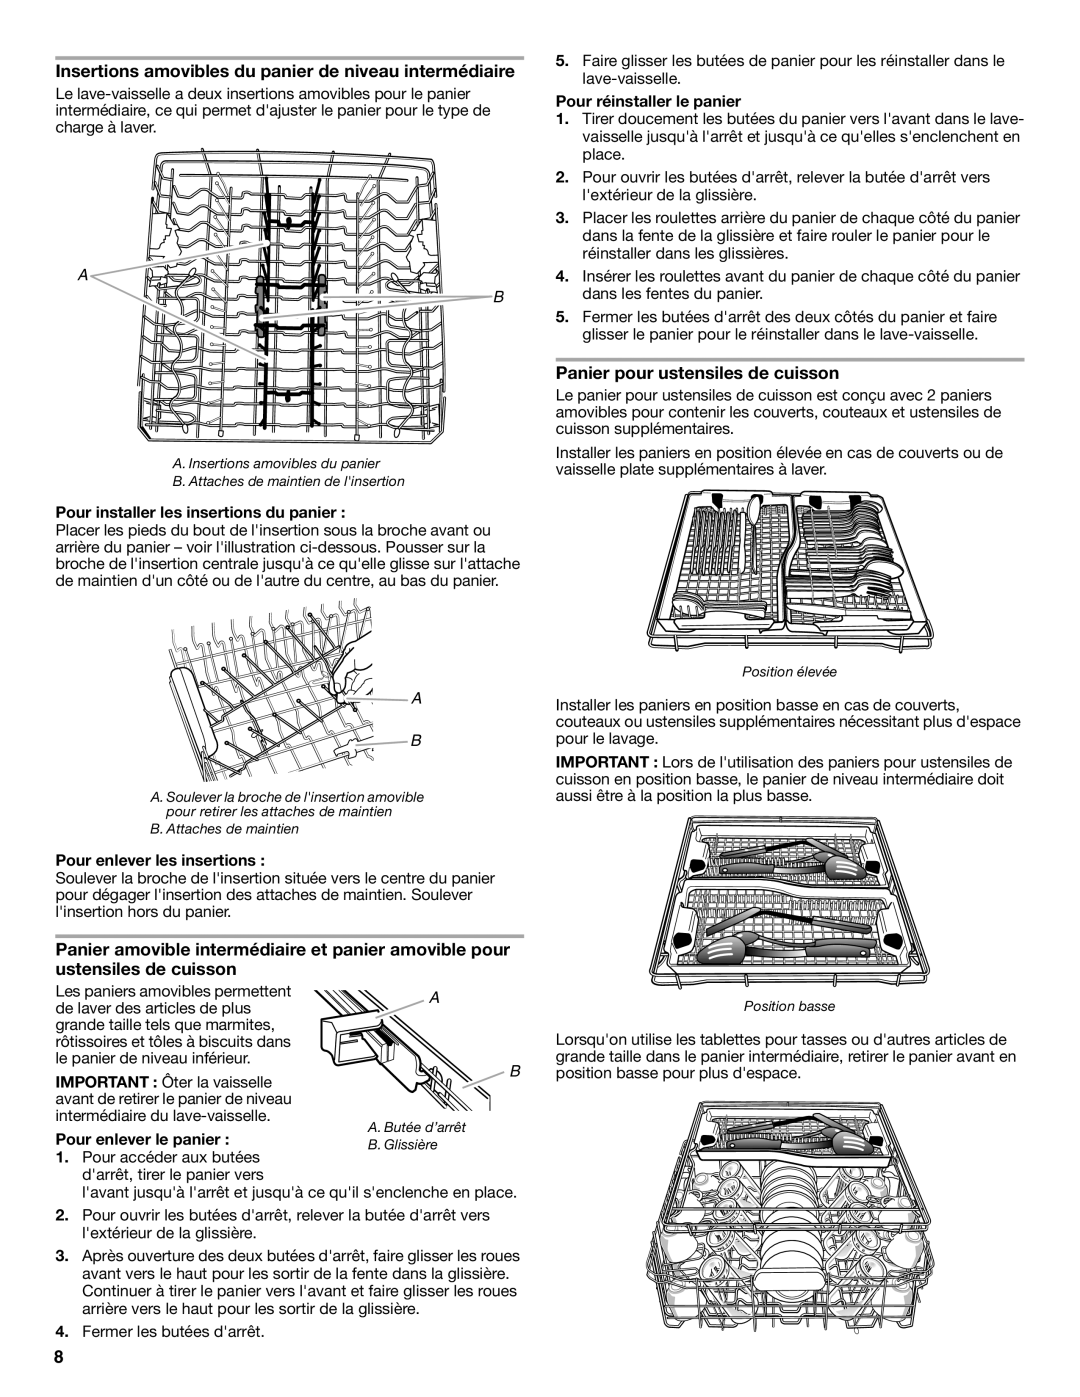 KitchenAid W10193741A warranty Insertions amovibles du panier de niveau intermédiaire, Panier pour ustensiles de cuisson 